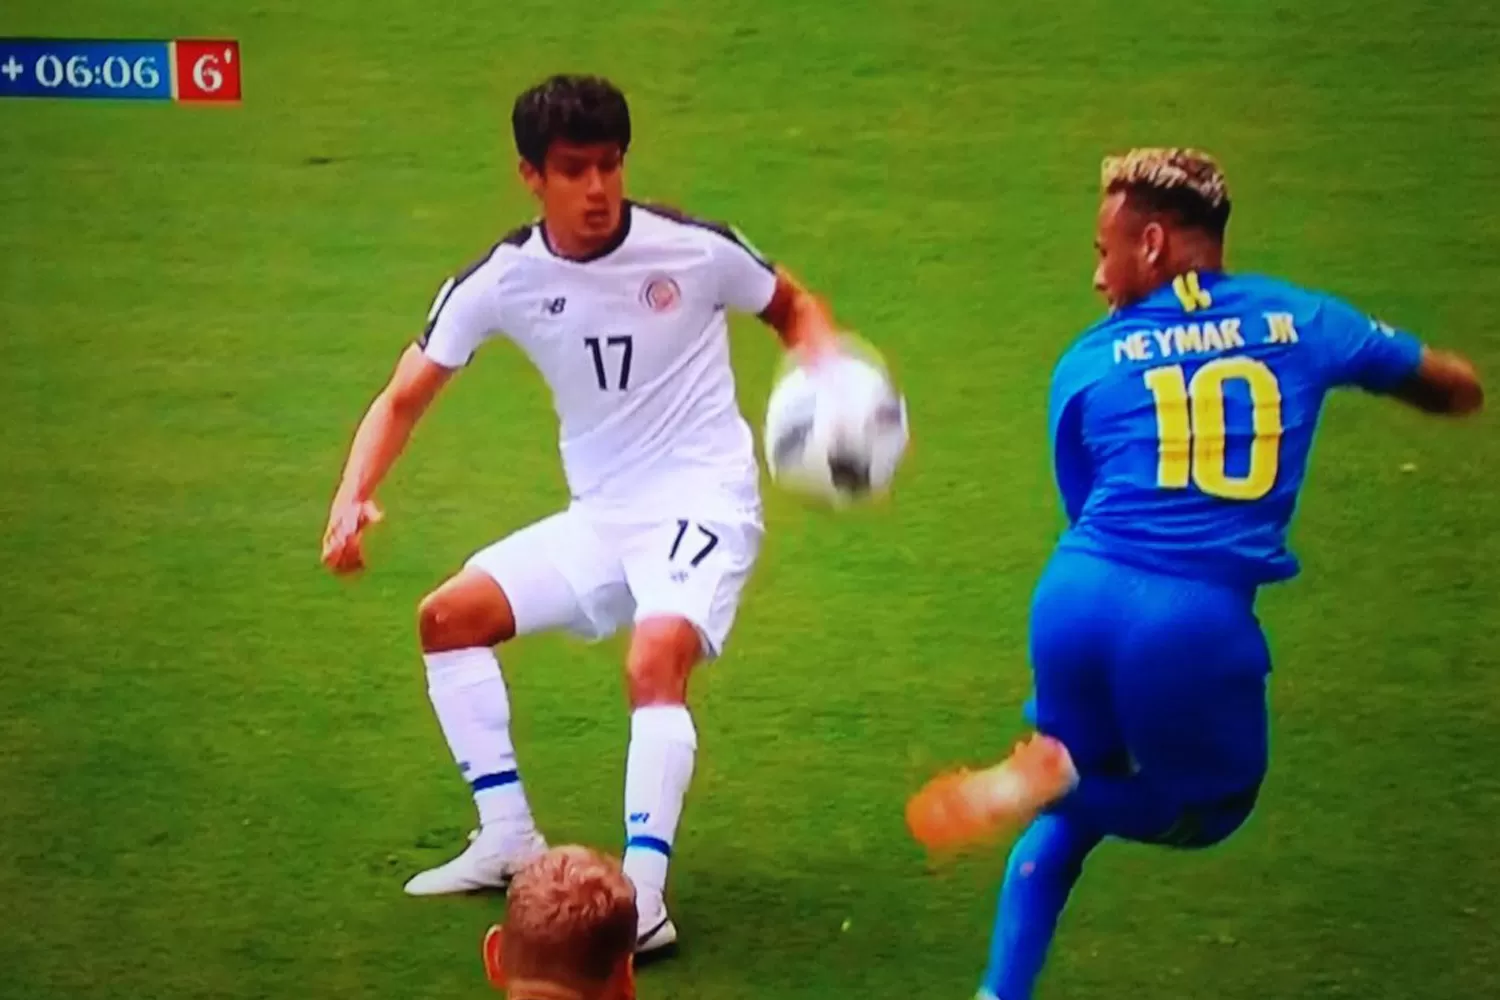 BICICLETA. Neymar utilizó el recurso para superar a su rival. (CAPTURA DE VIDEO)